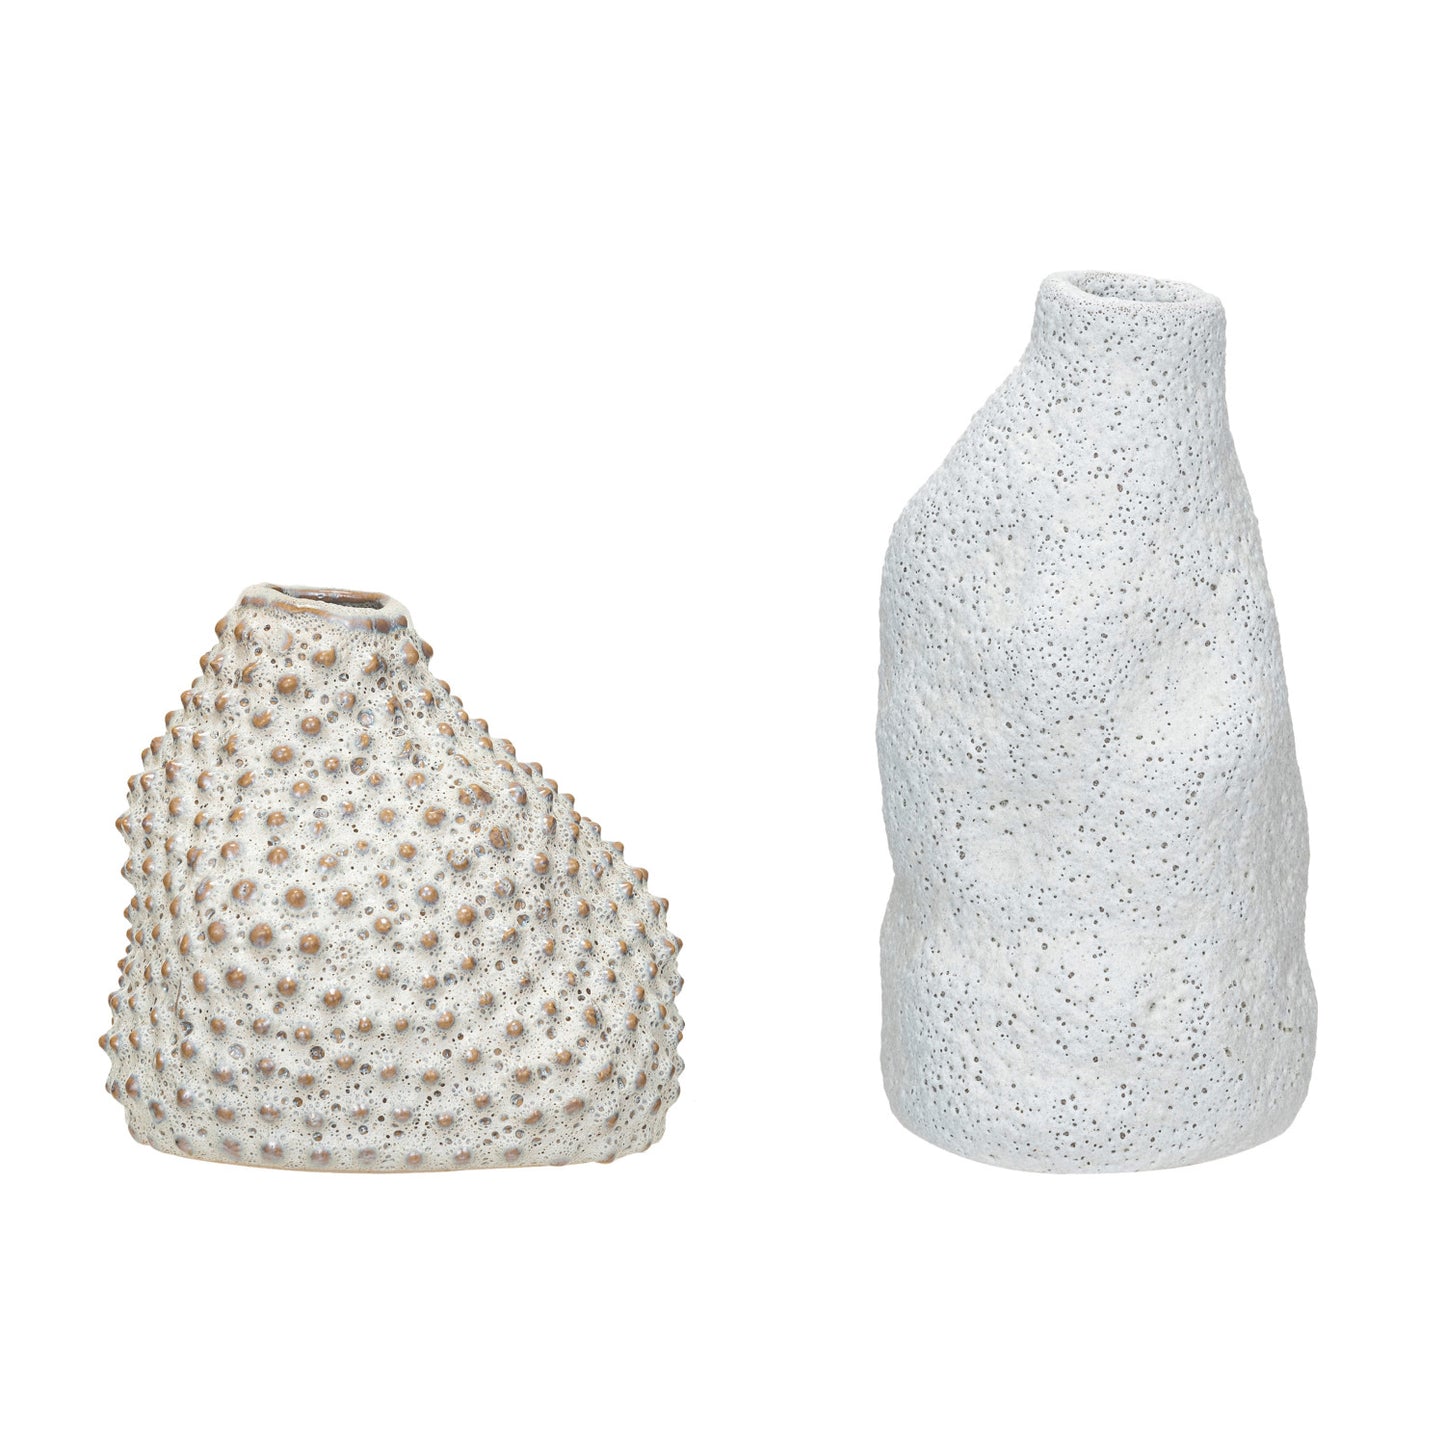 Coarse Stoneware Organic Shaped Vases